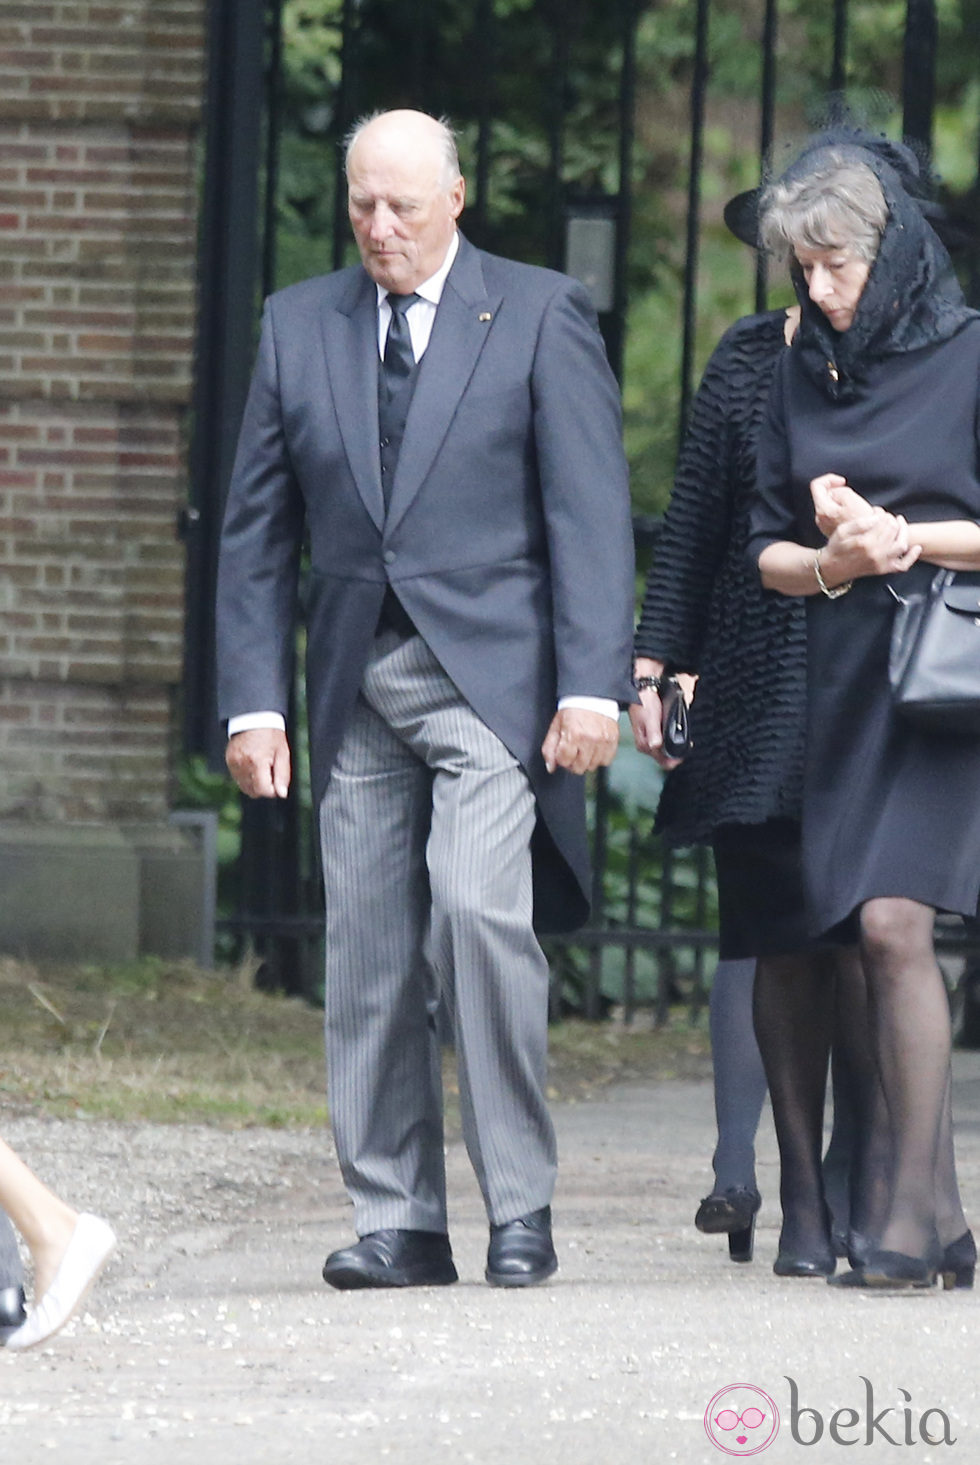 El Rey Harald V de Noruega en el funeral del Príncipe Friso de Holanda